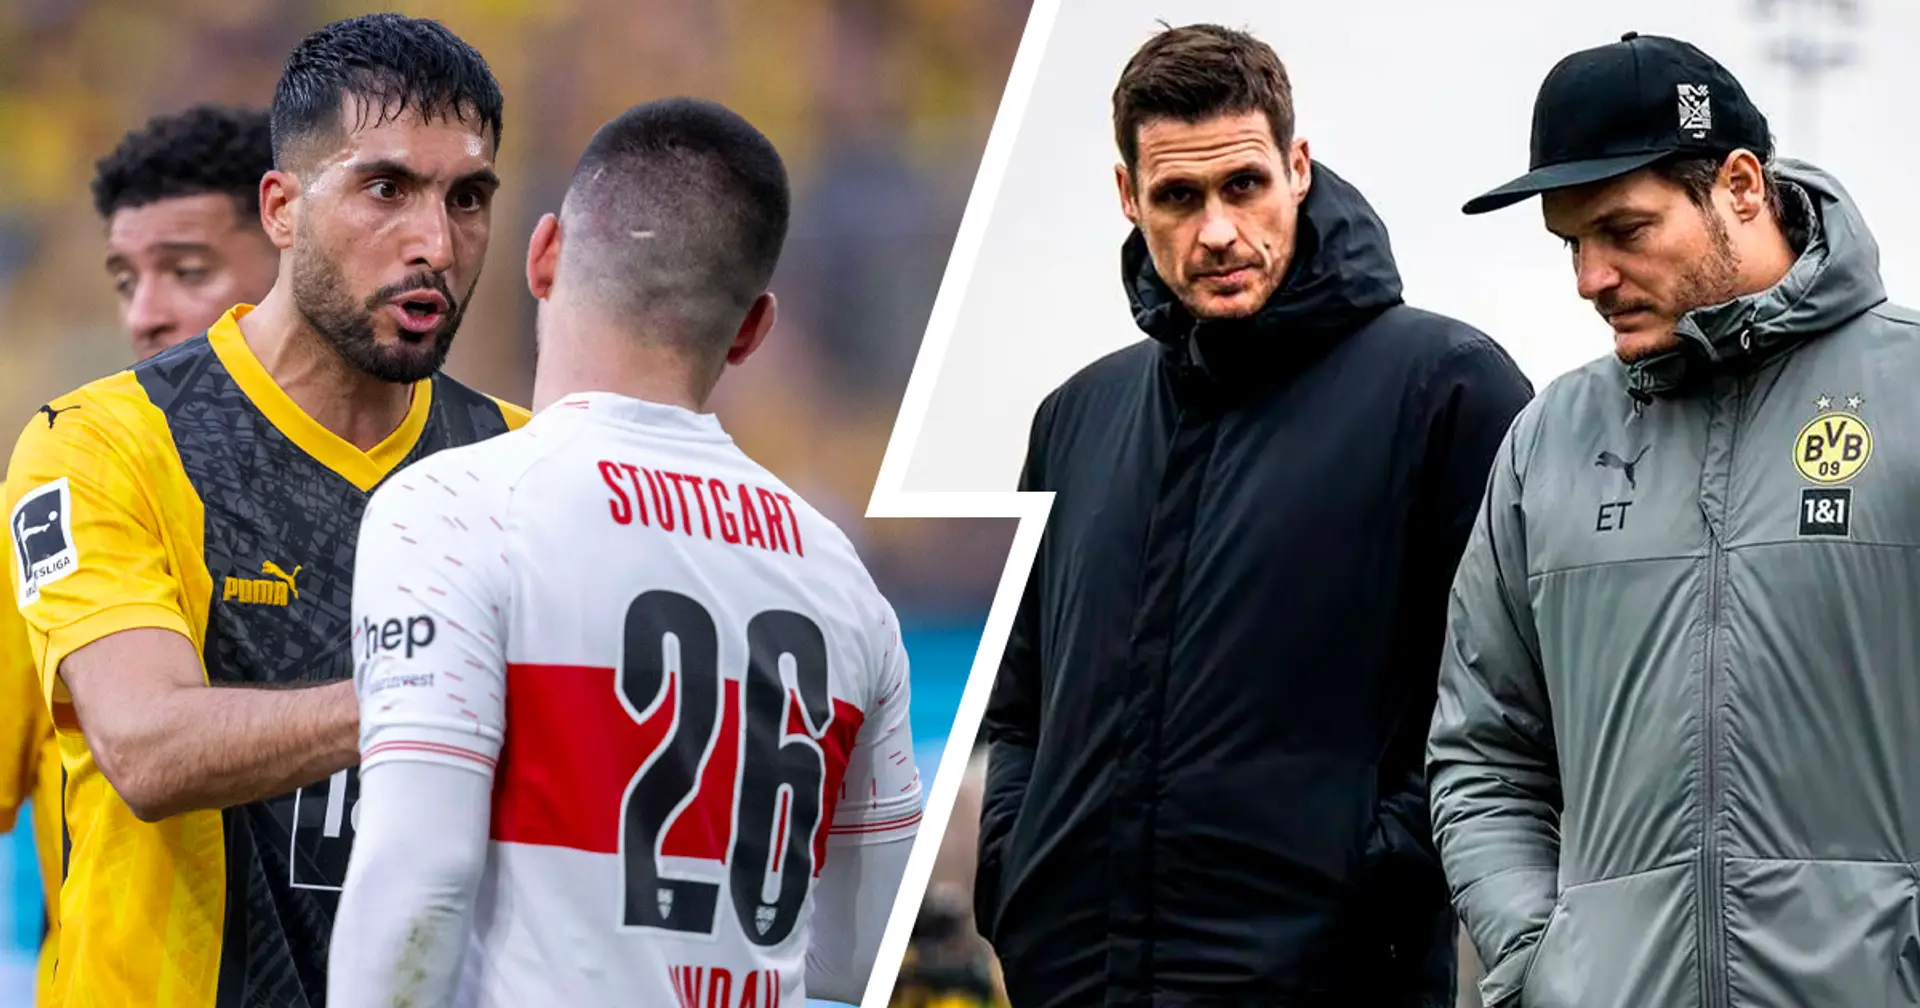 "Ein gutes Spiel gemacht": Terzic und Kehl hadern mit "nicht verdienter" Niederlage gegen Stuttgart